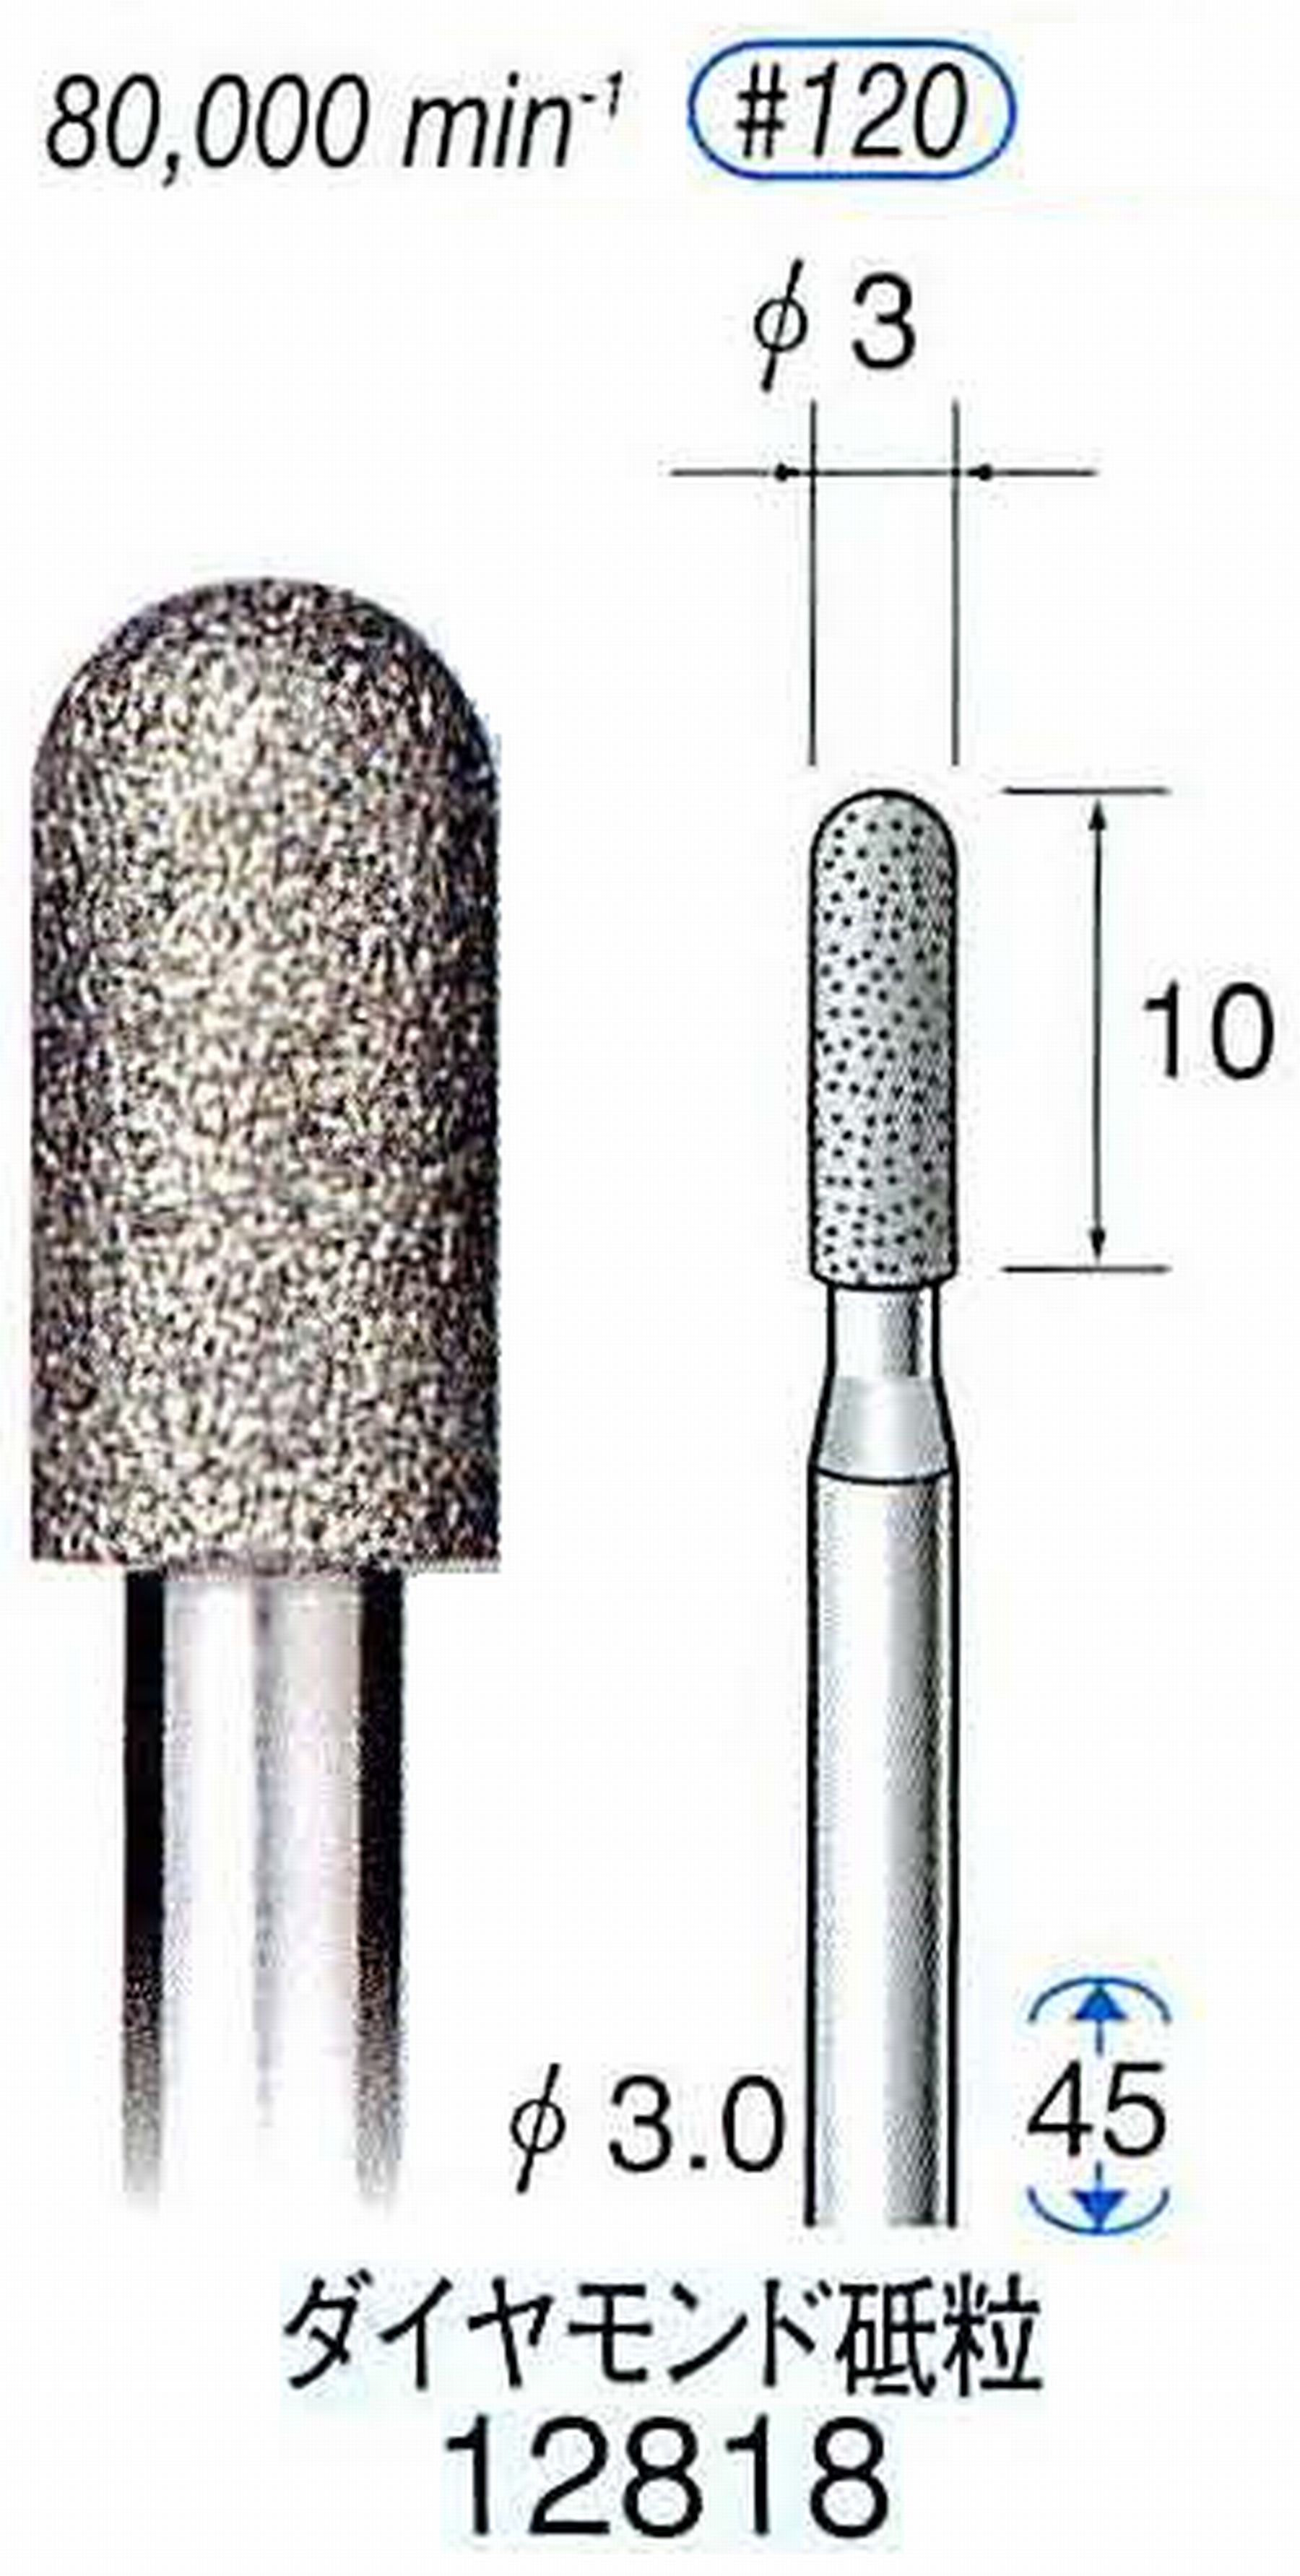 ナカニシ/NAKANISHI クラフト・ホビー用ダイヤモンドバー ダイヤモンド砥粒 軸径(シャンク)φ3.0mm 12818